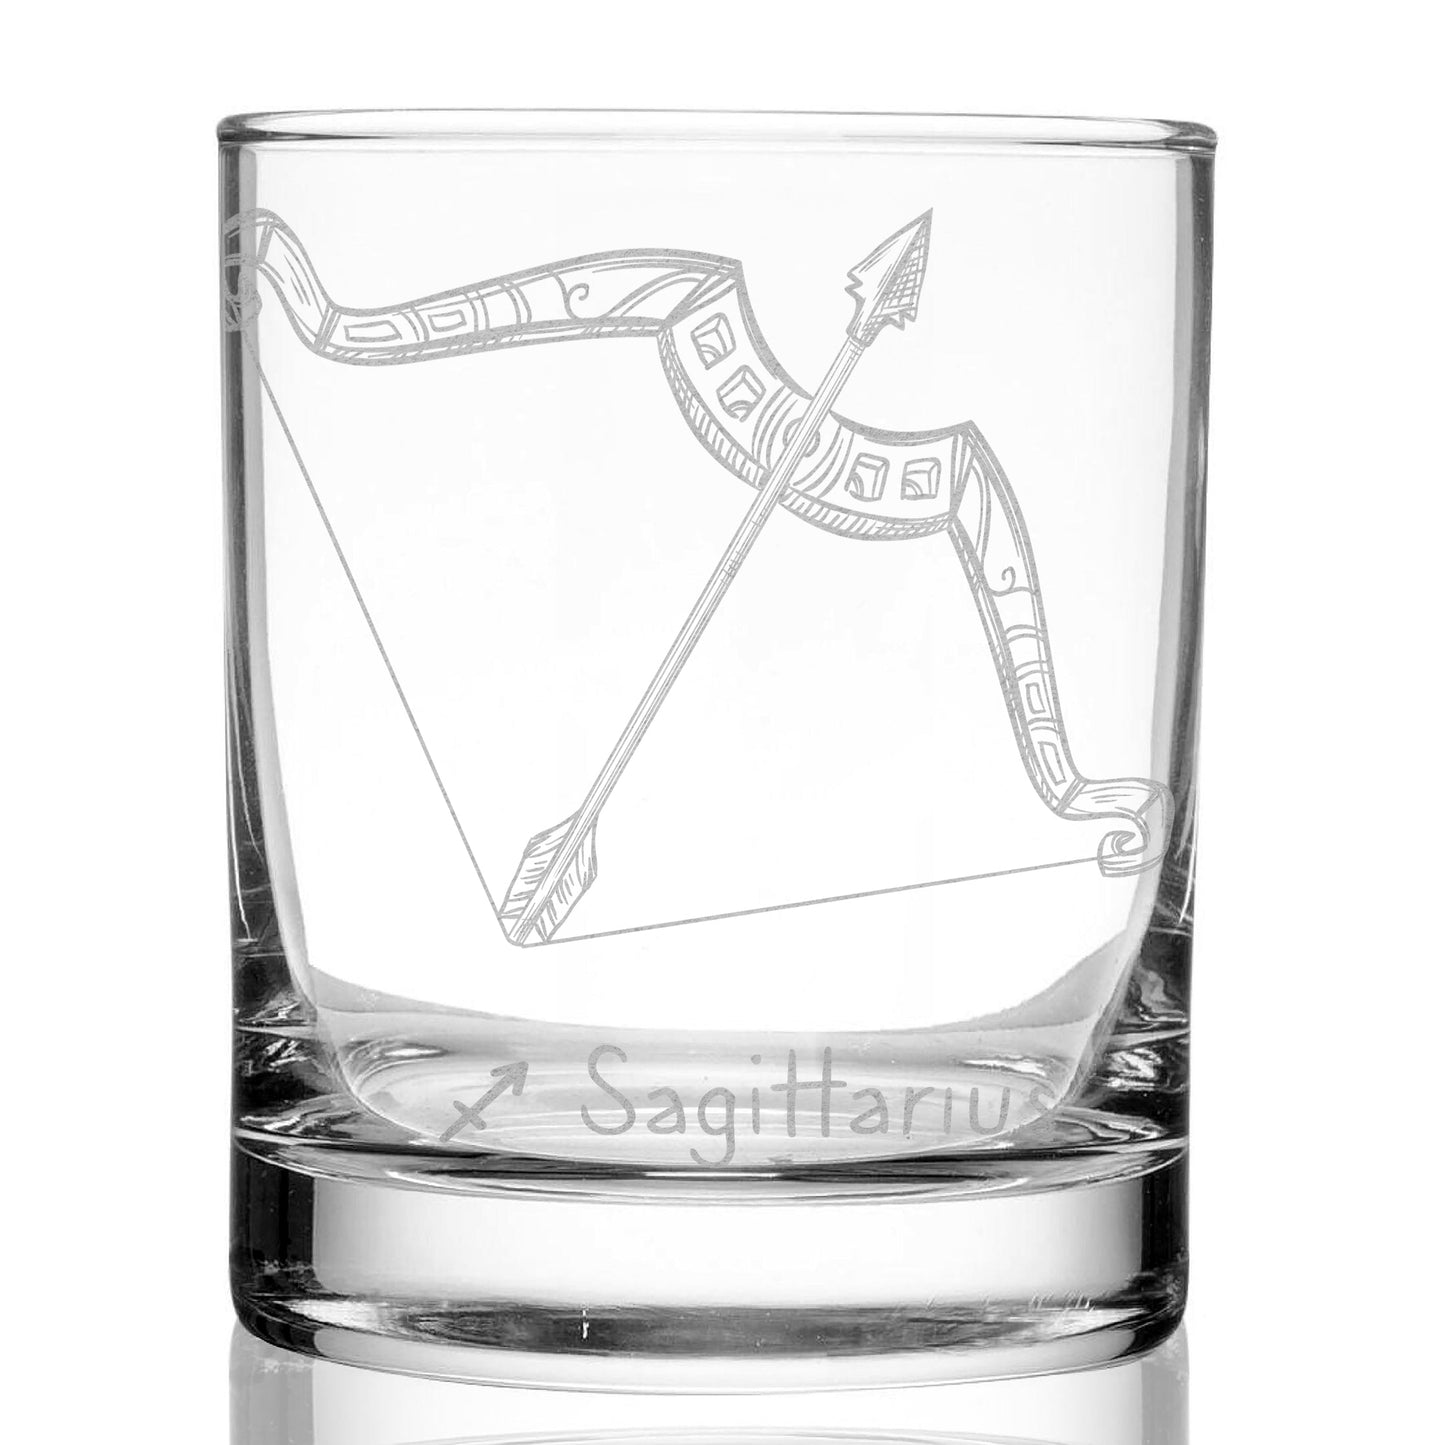 Zodiac Whiskey Glasses